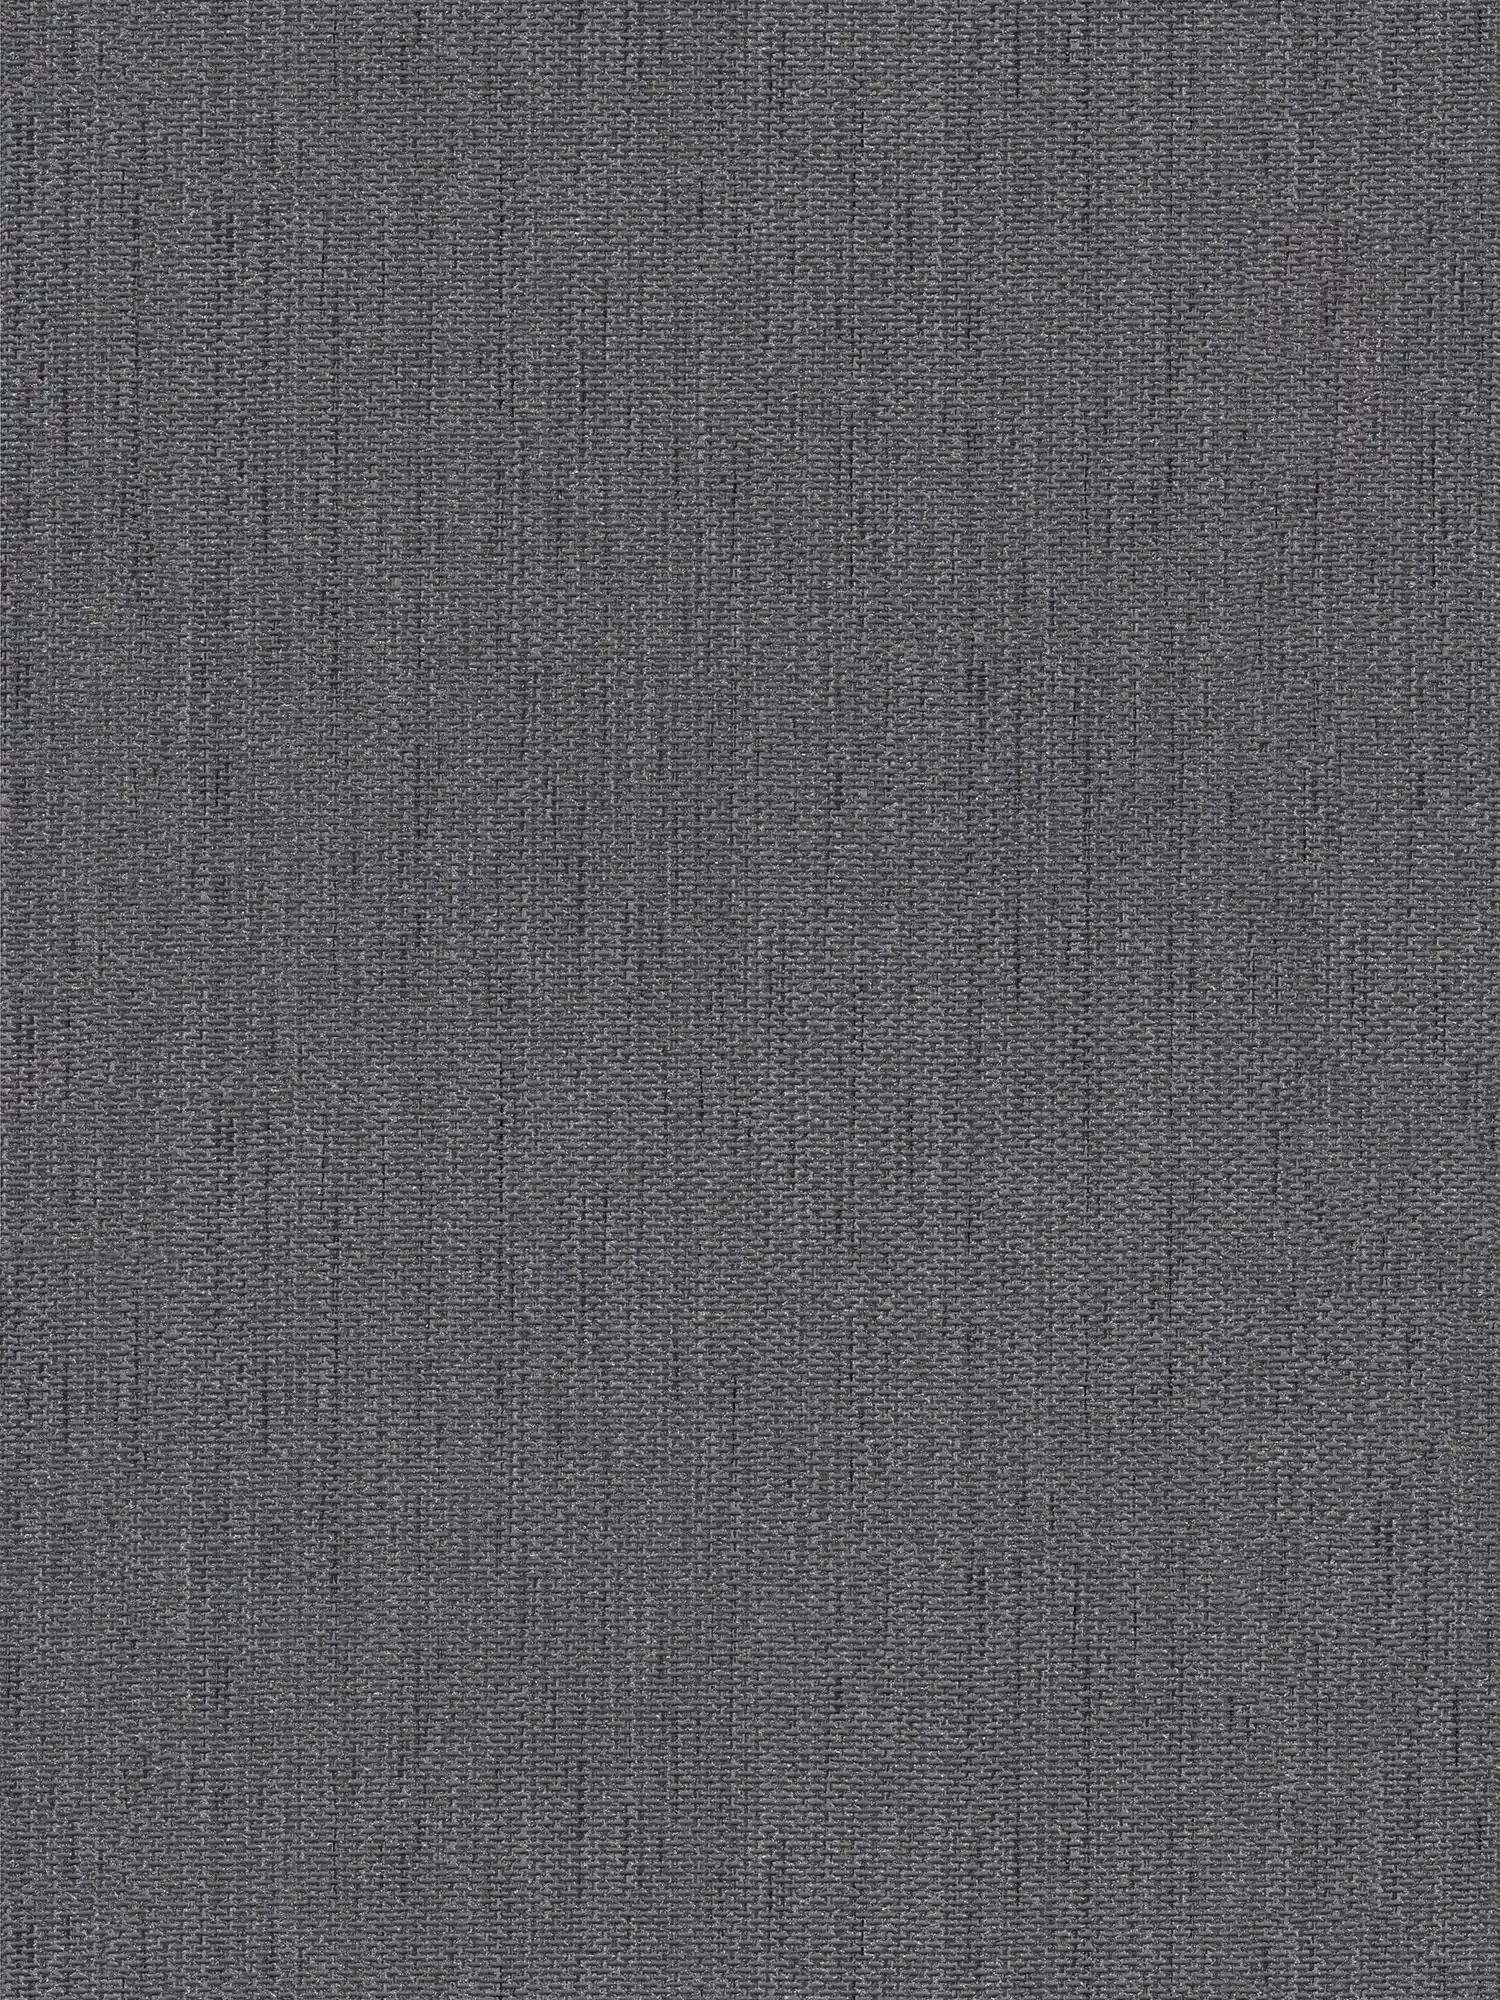 Leinenoptik Tapete mit Textil-Struktur – Grau, Schwarz
